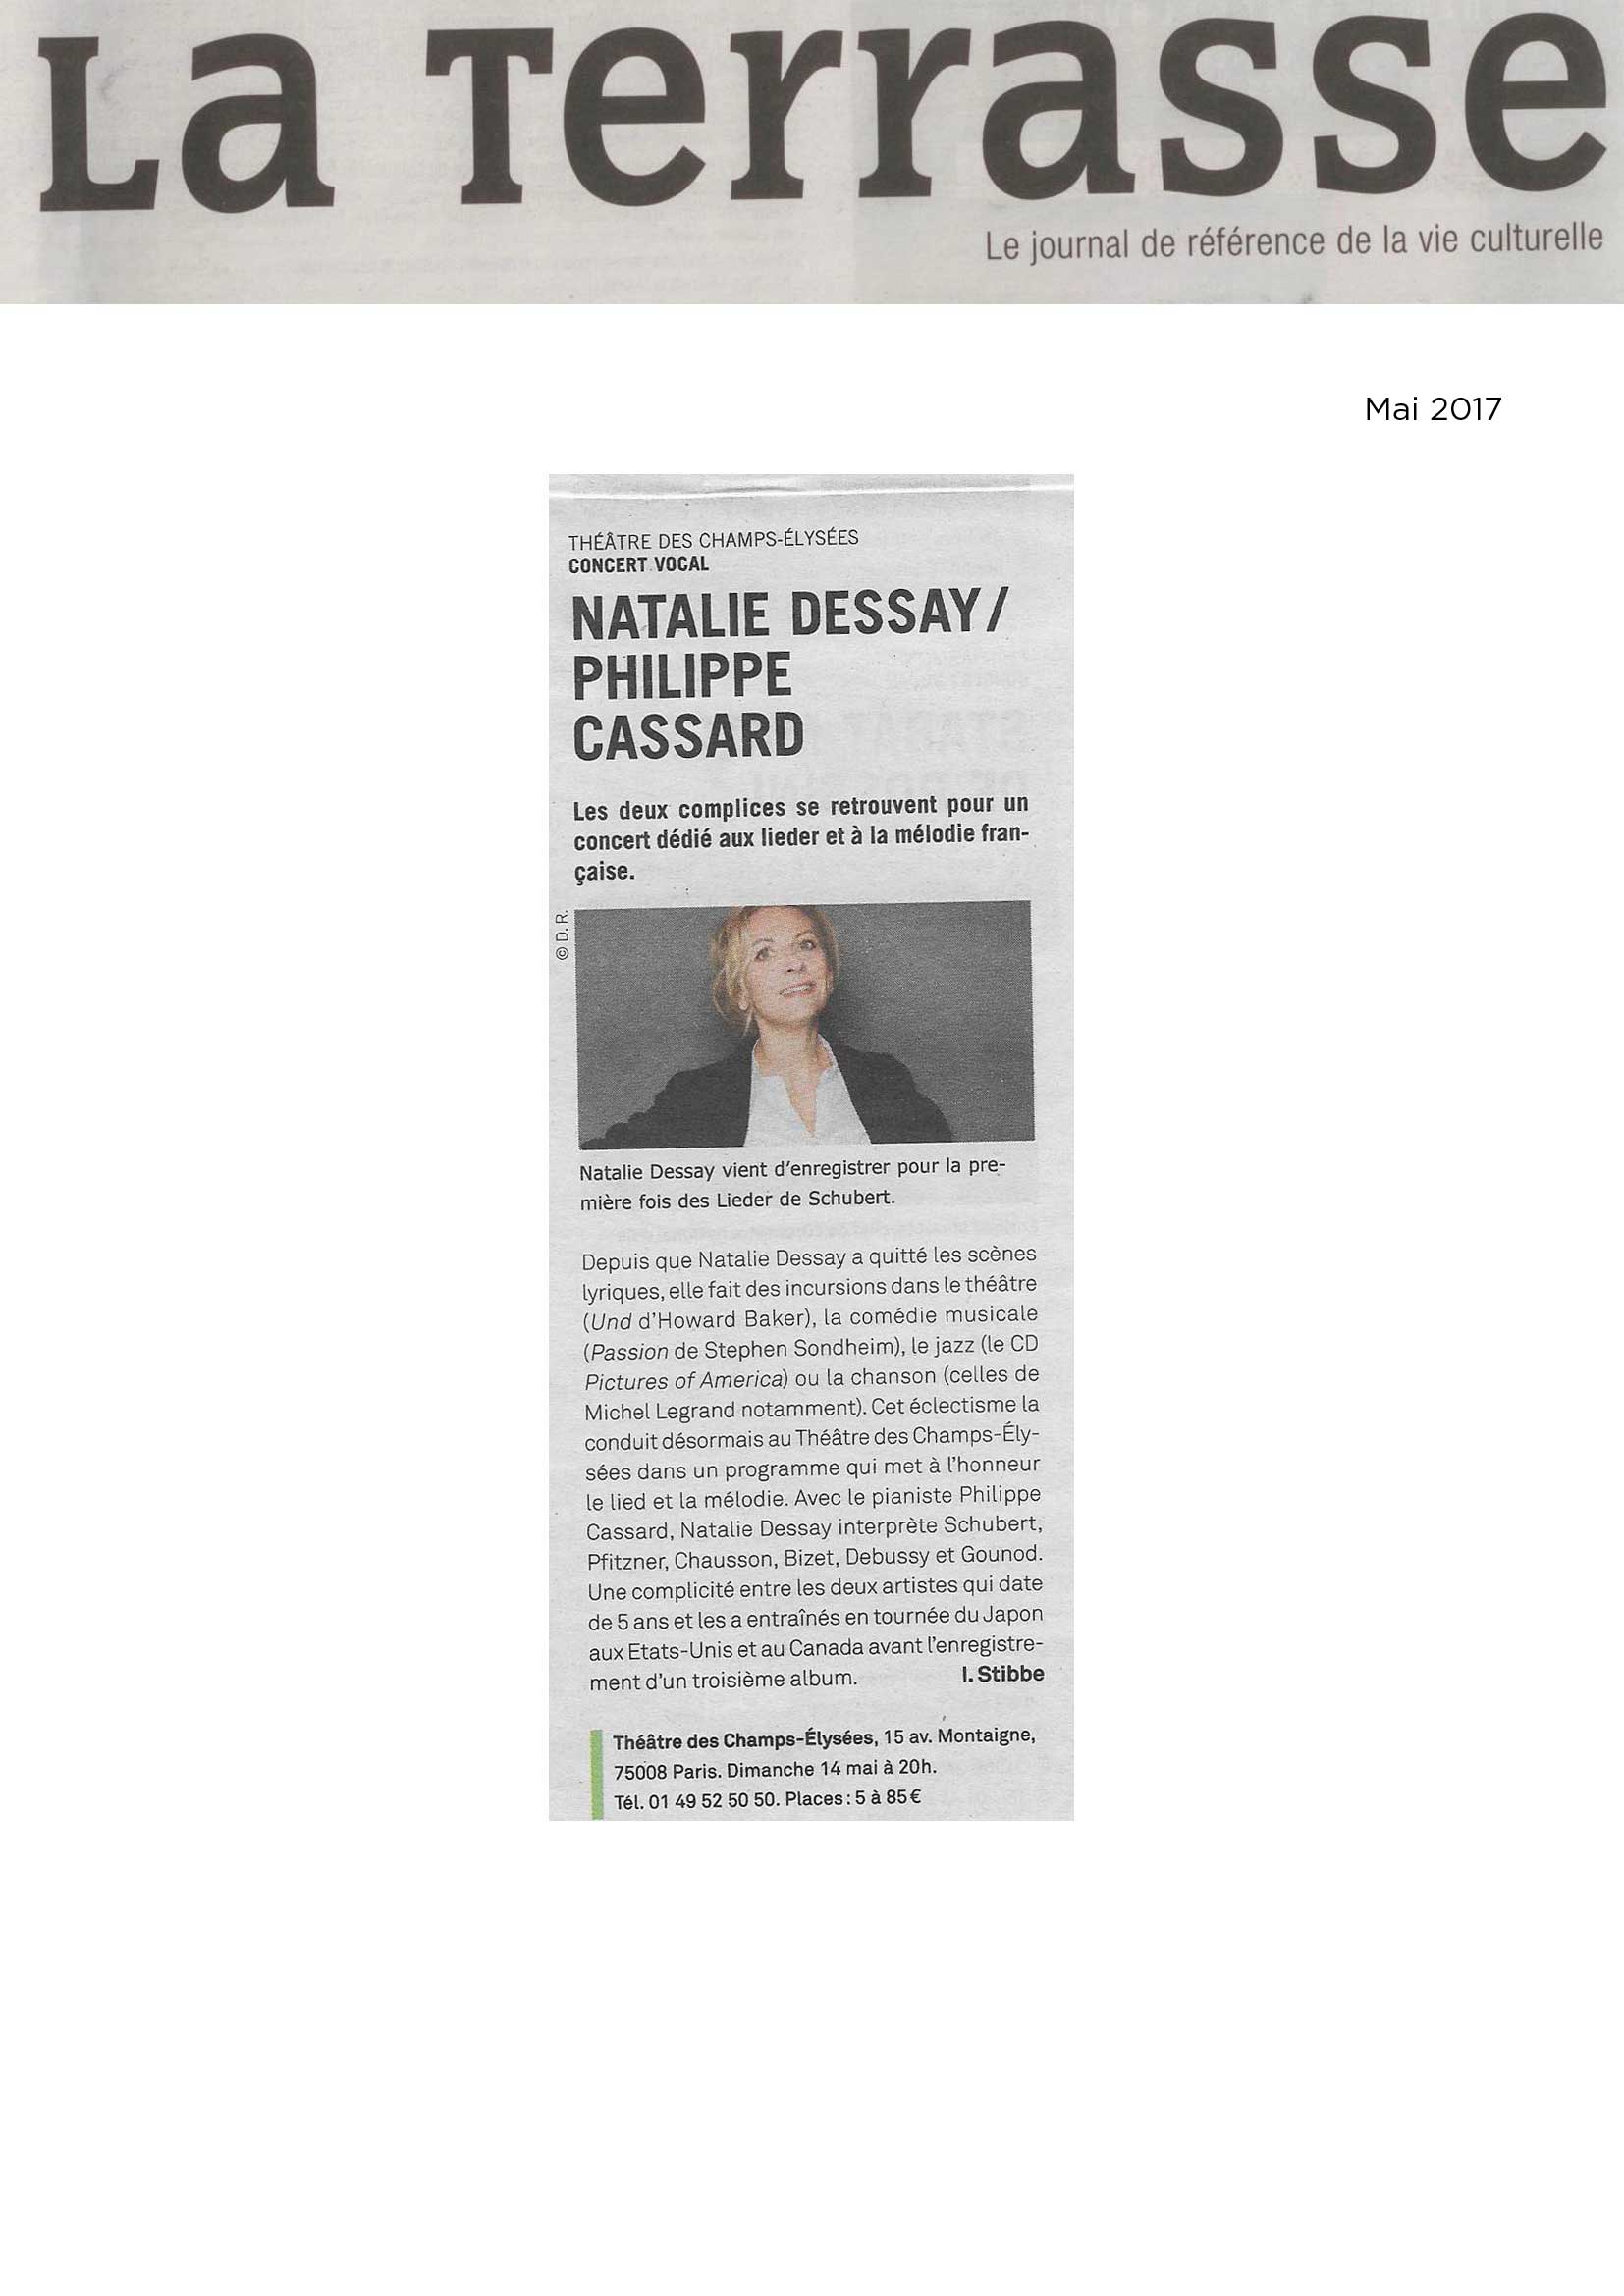 Annonce du récital de Natalie Dessay et Philippe Cassard dans le numéro de mai 2017 de La Terrasse